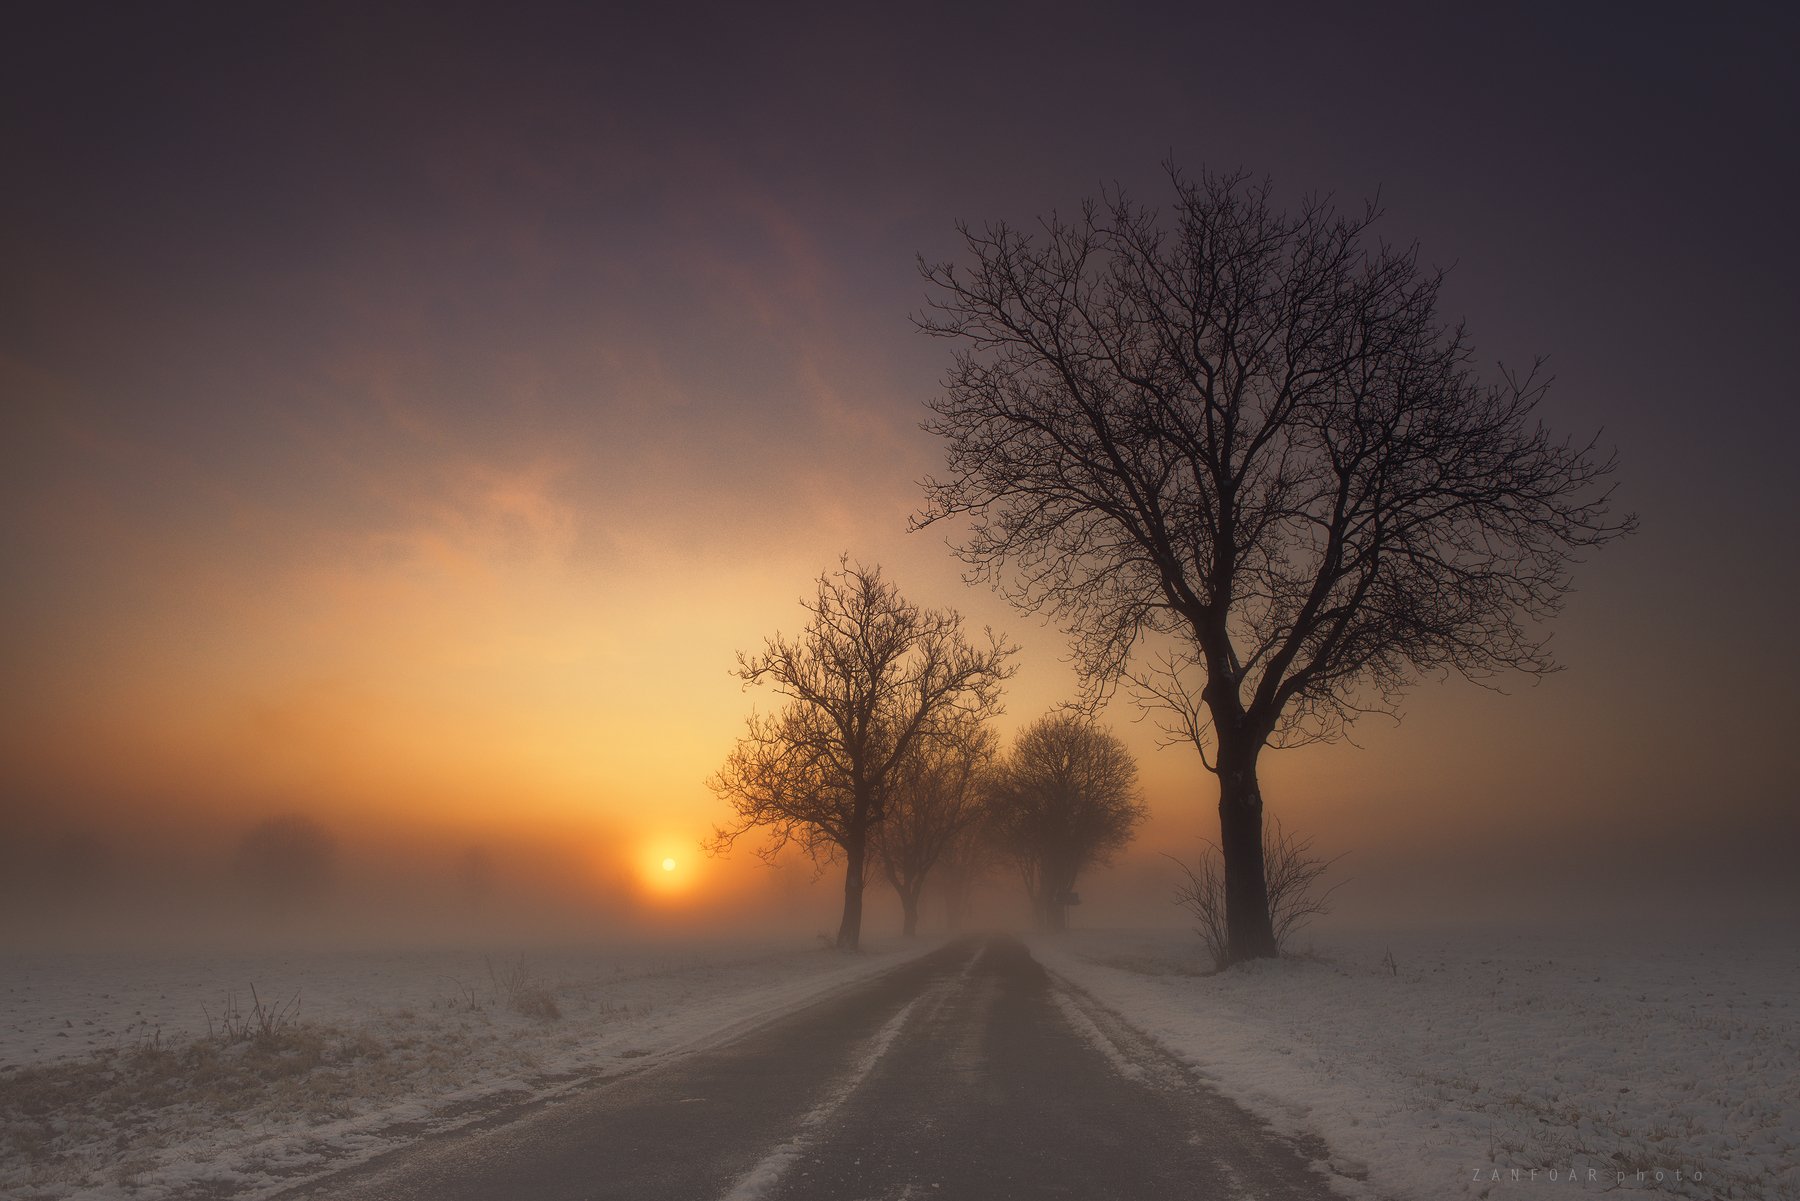 туманное утро,morning,landscape,fog,winter,snow,zanfoar,czech republic,bohemia,moravia,nikon d750,чехия,czech, Zanfoar